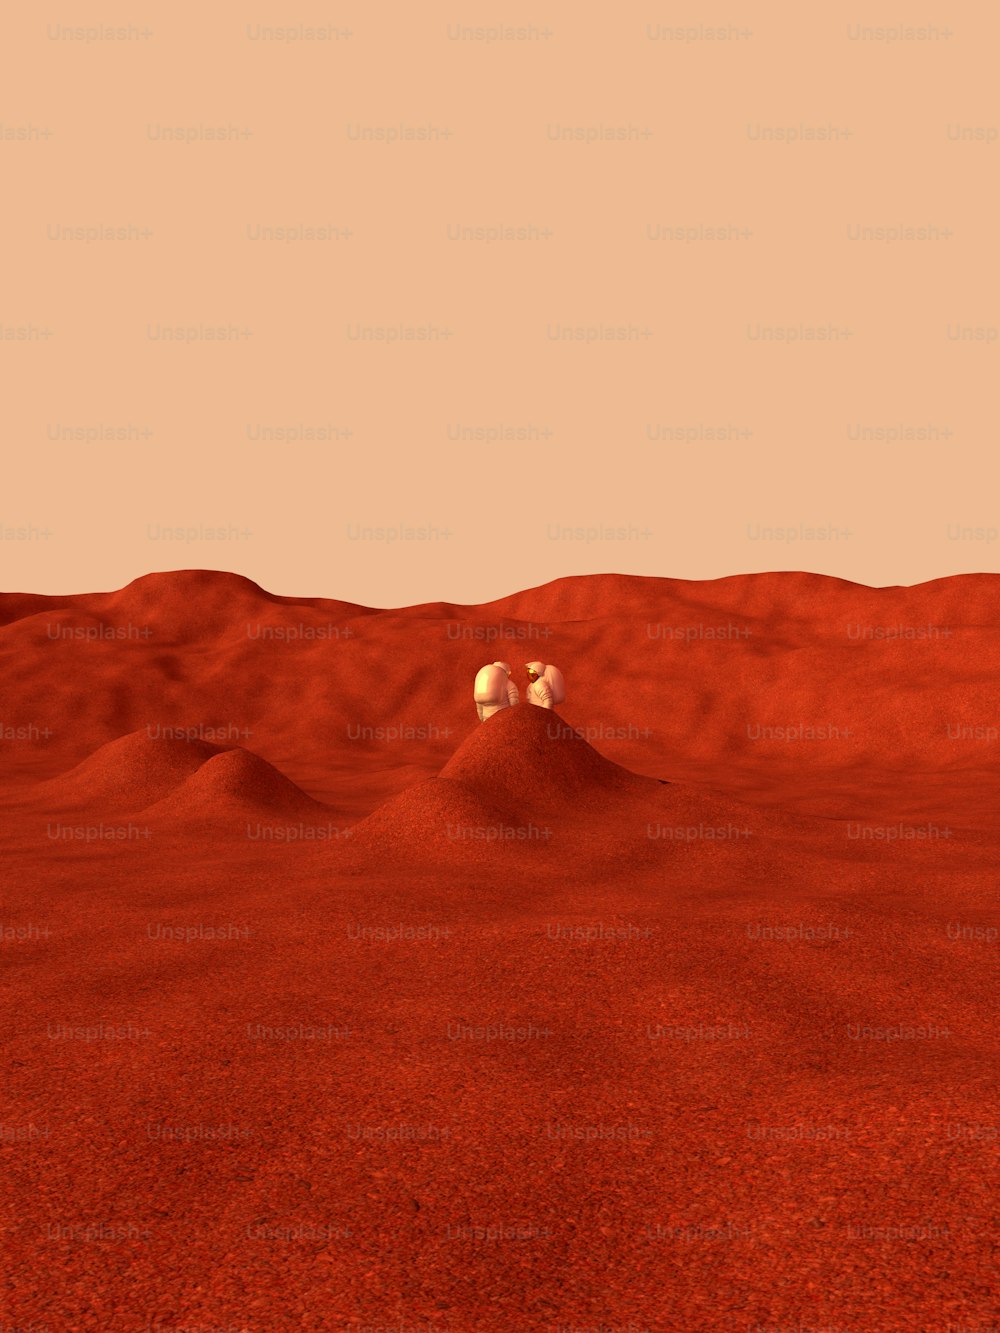 Una imagen generada por computadora de un desierto rojo